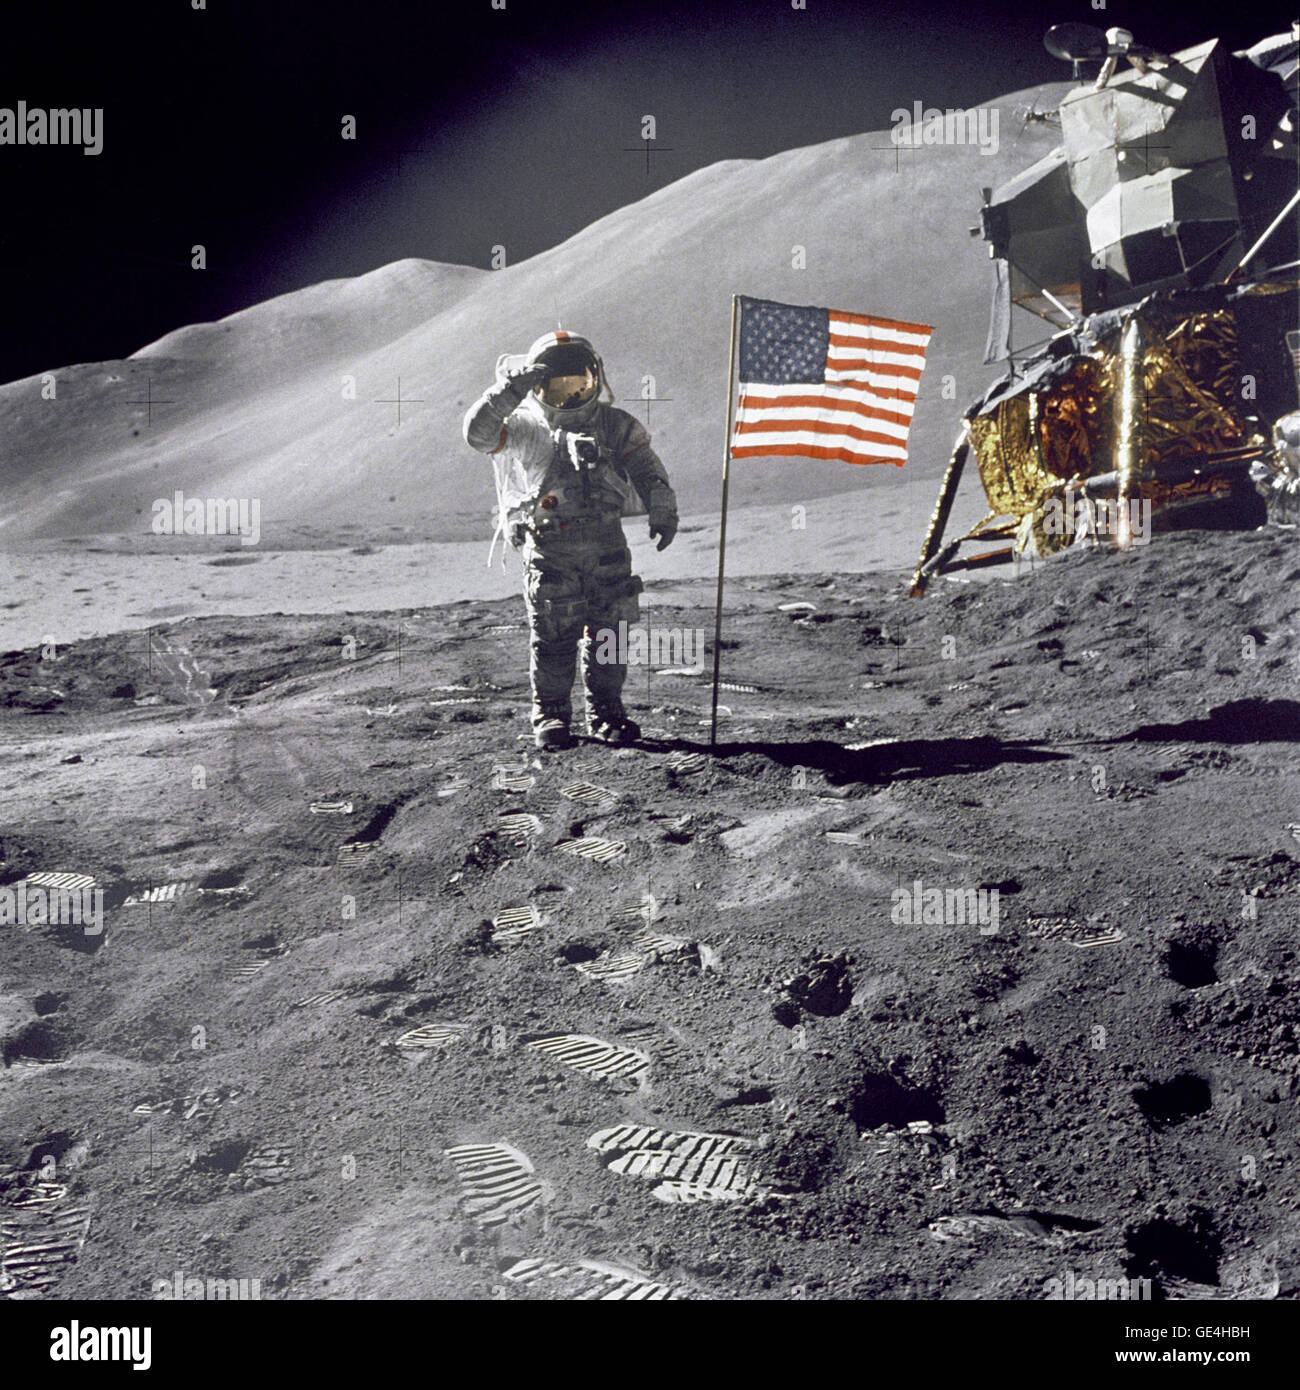 (1 août 1971) Astronaute David R. Scott, commandant, donne un salut militaire tout en se tenant à côté du drapeau des États-Unis déployée au cours de la surface lunaire Apollo 15 activité extravéhiculaire (EVA) à l'Hadley-Apennine site d'atterrissage. Le drapeau a été déployé à la fin de l'EVA-2. Le Module lunaire "Falcon" est partiellement visible sur la droite. Hadley Delta dans l'arrière-plan s'élève à environ 4 000 mètres (environ 13 124 pieds) au-dessus de la plaine. La base de la montagne est d'environ 5 kilomètres (environ 3 milles) de l'établissement. Cette photographie a été prise par l'astronaute James B. Irwin, Module lunaire pil Banque D'Images